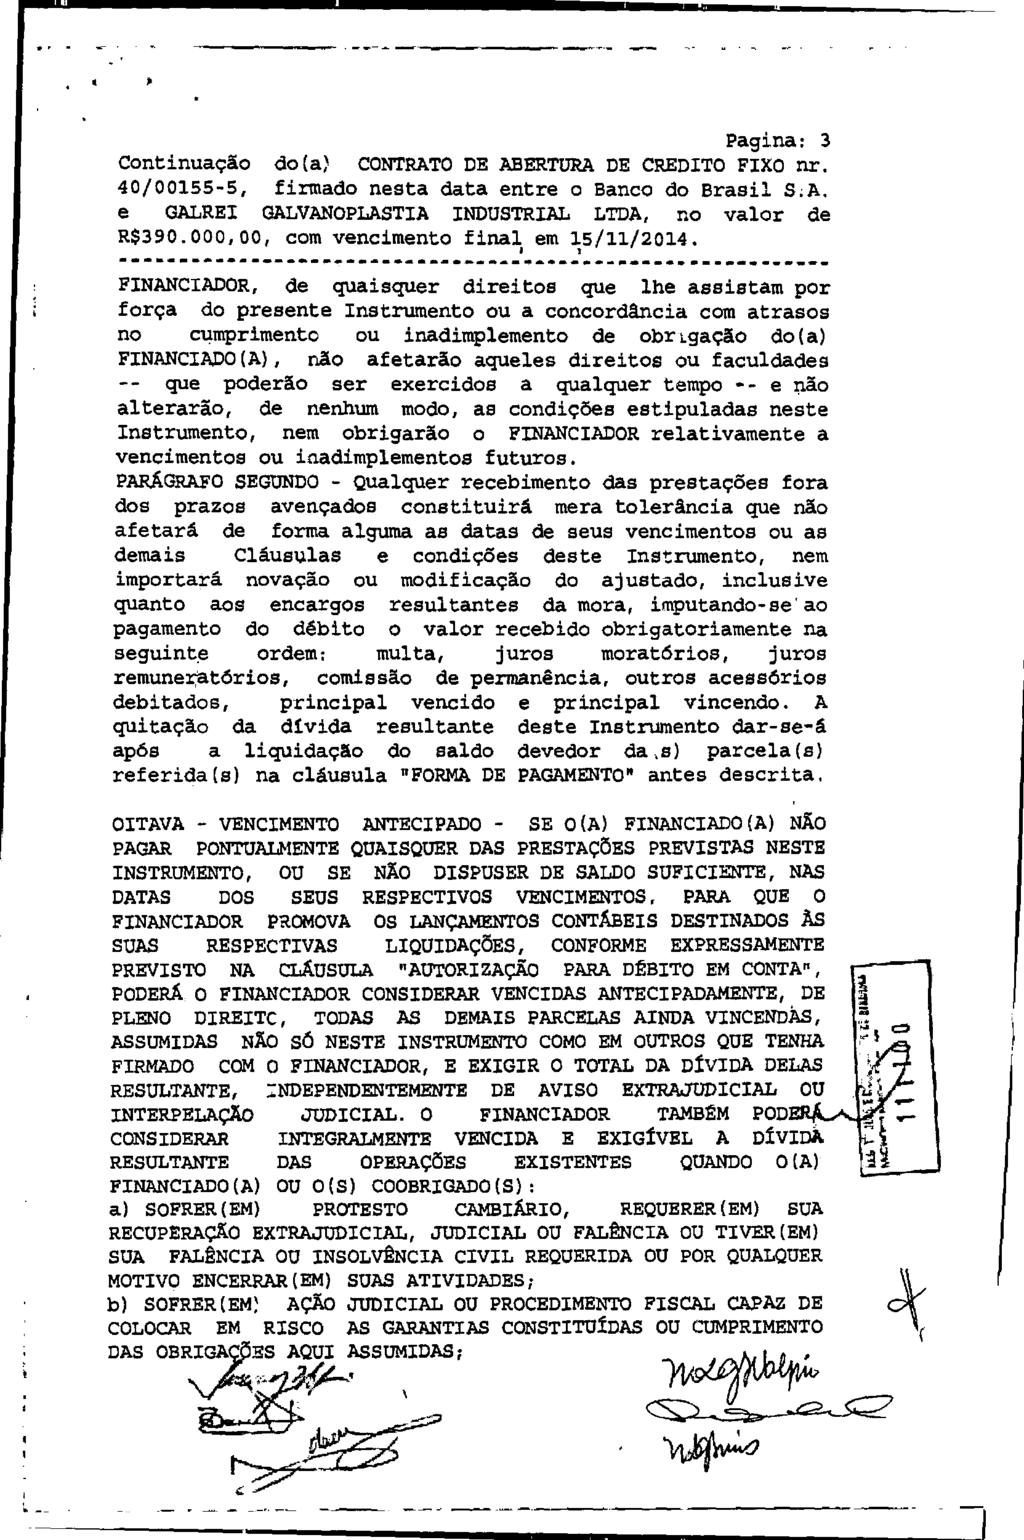 fls. 12 Este documento é cópia do original, assinado digitalmente por EDUARDO JANZON AVALLONE NOGUEIRA e Tribunal de Justica de Sao Paulo, protocolado em 16/07/2015 às 09:43, sob o número